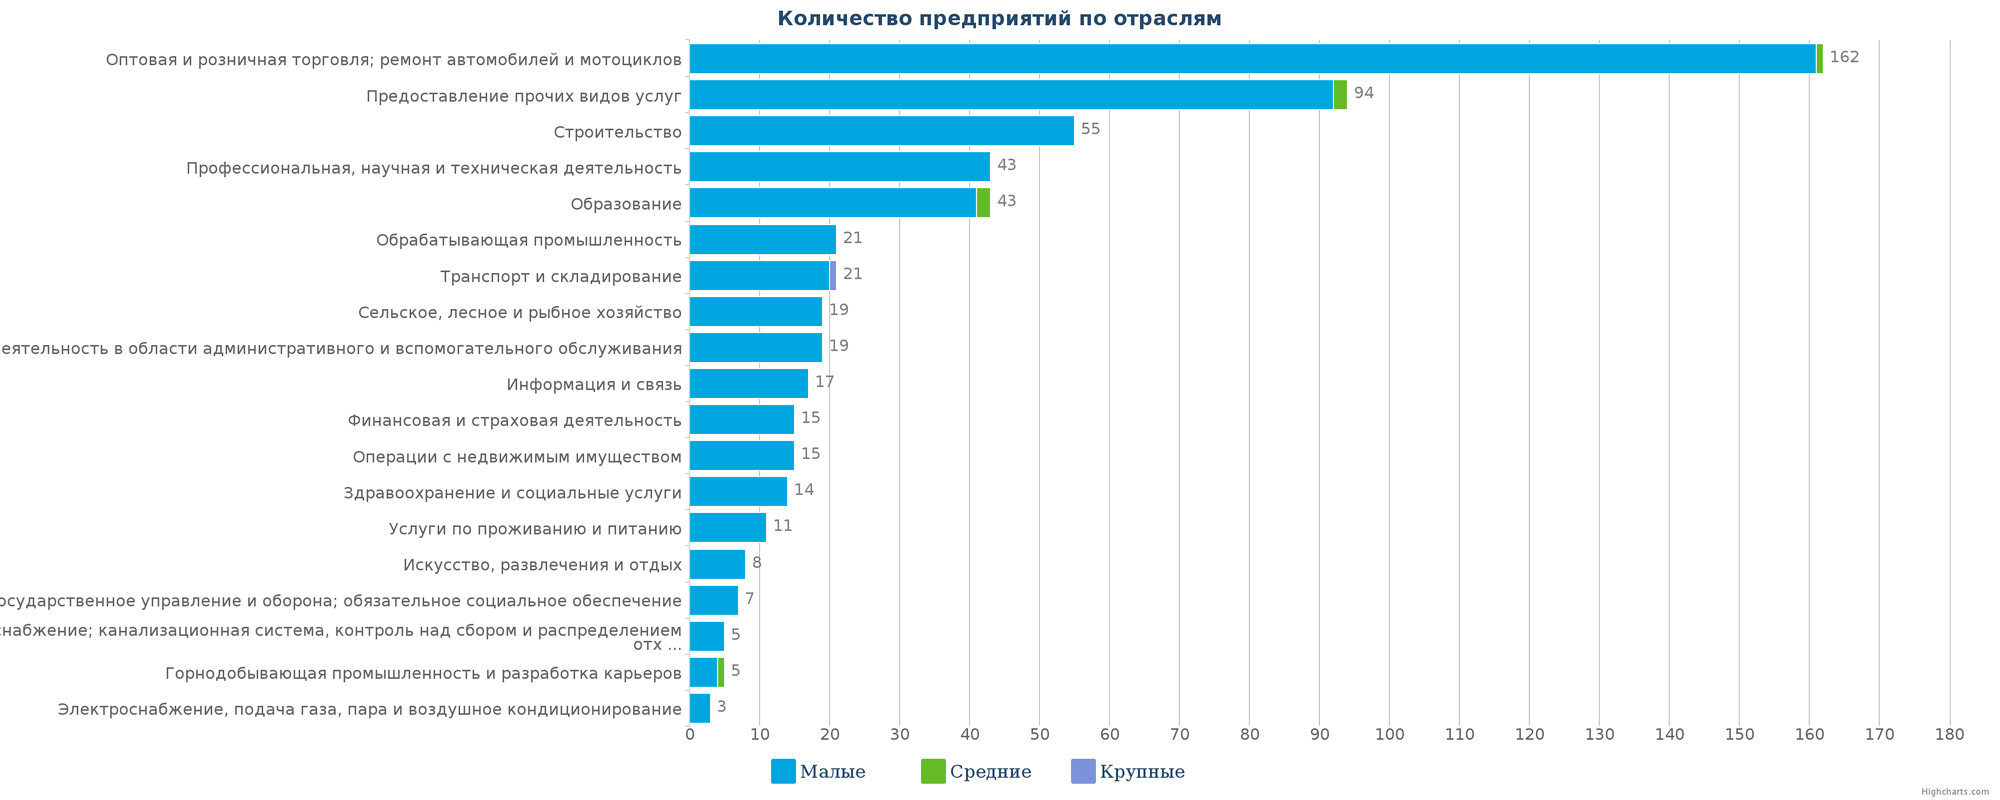 Новые организации в базе данных Казахстана